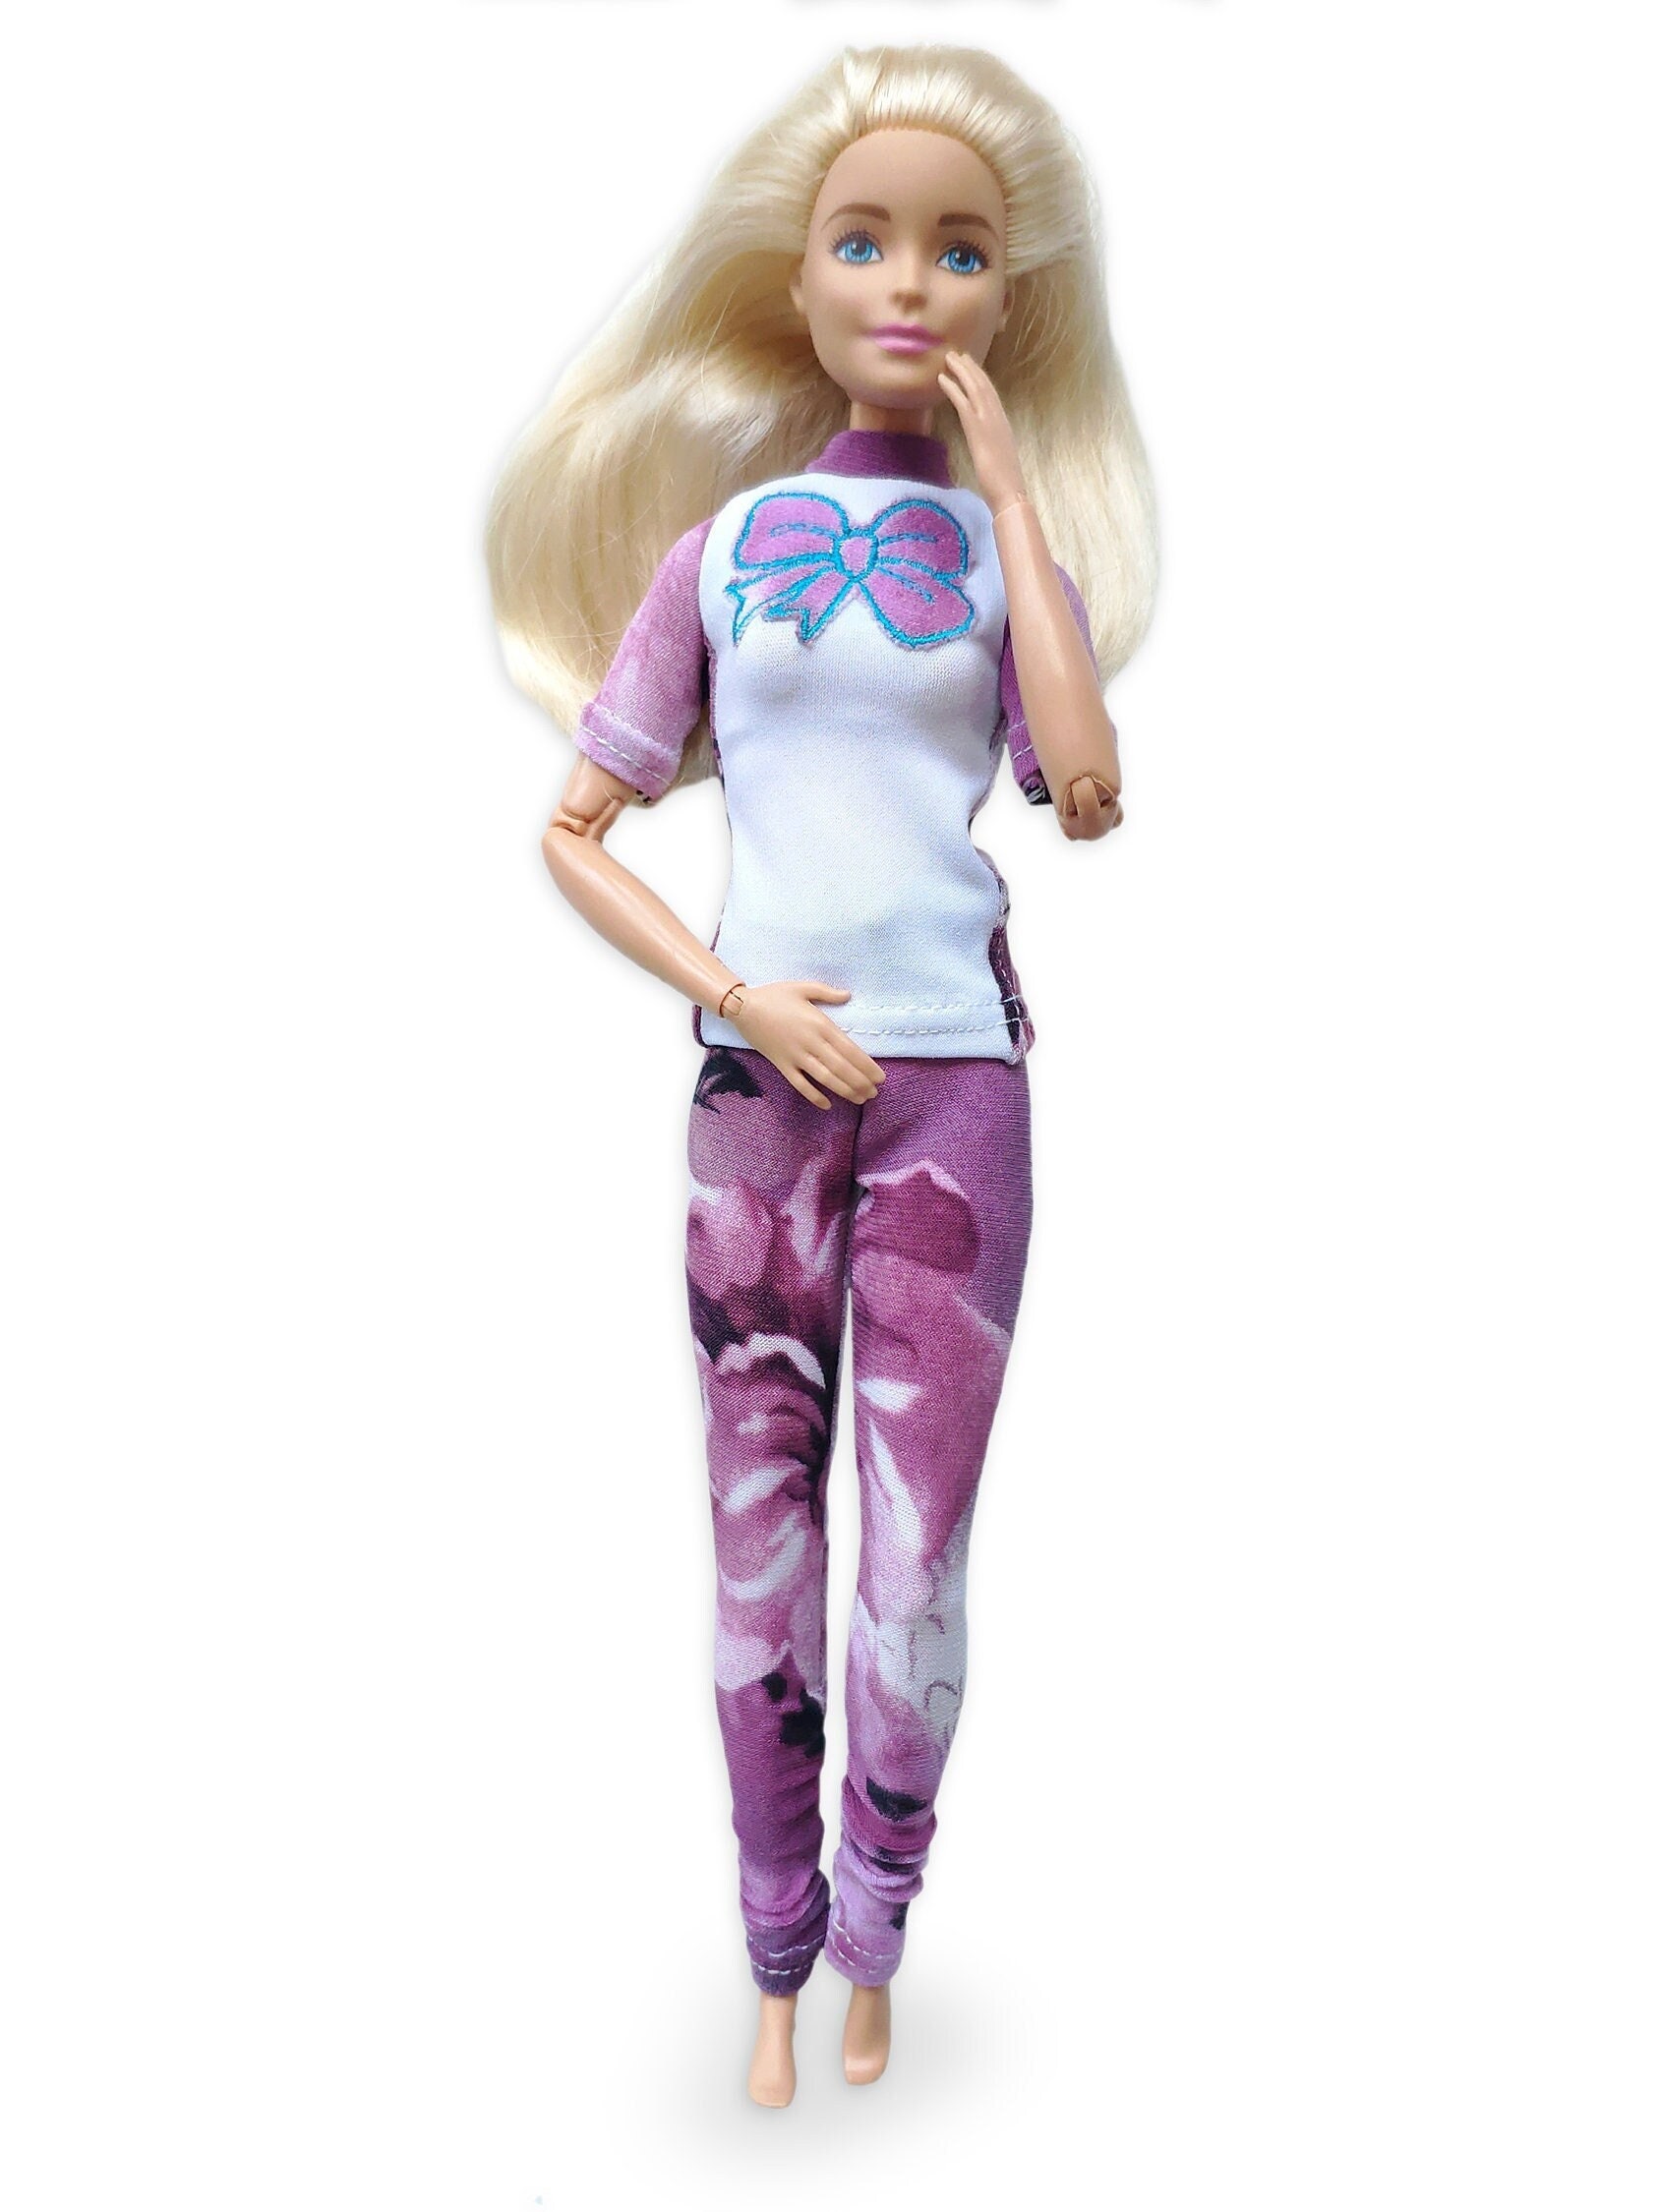 Barbie sport clothes - España